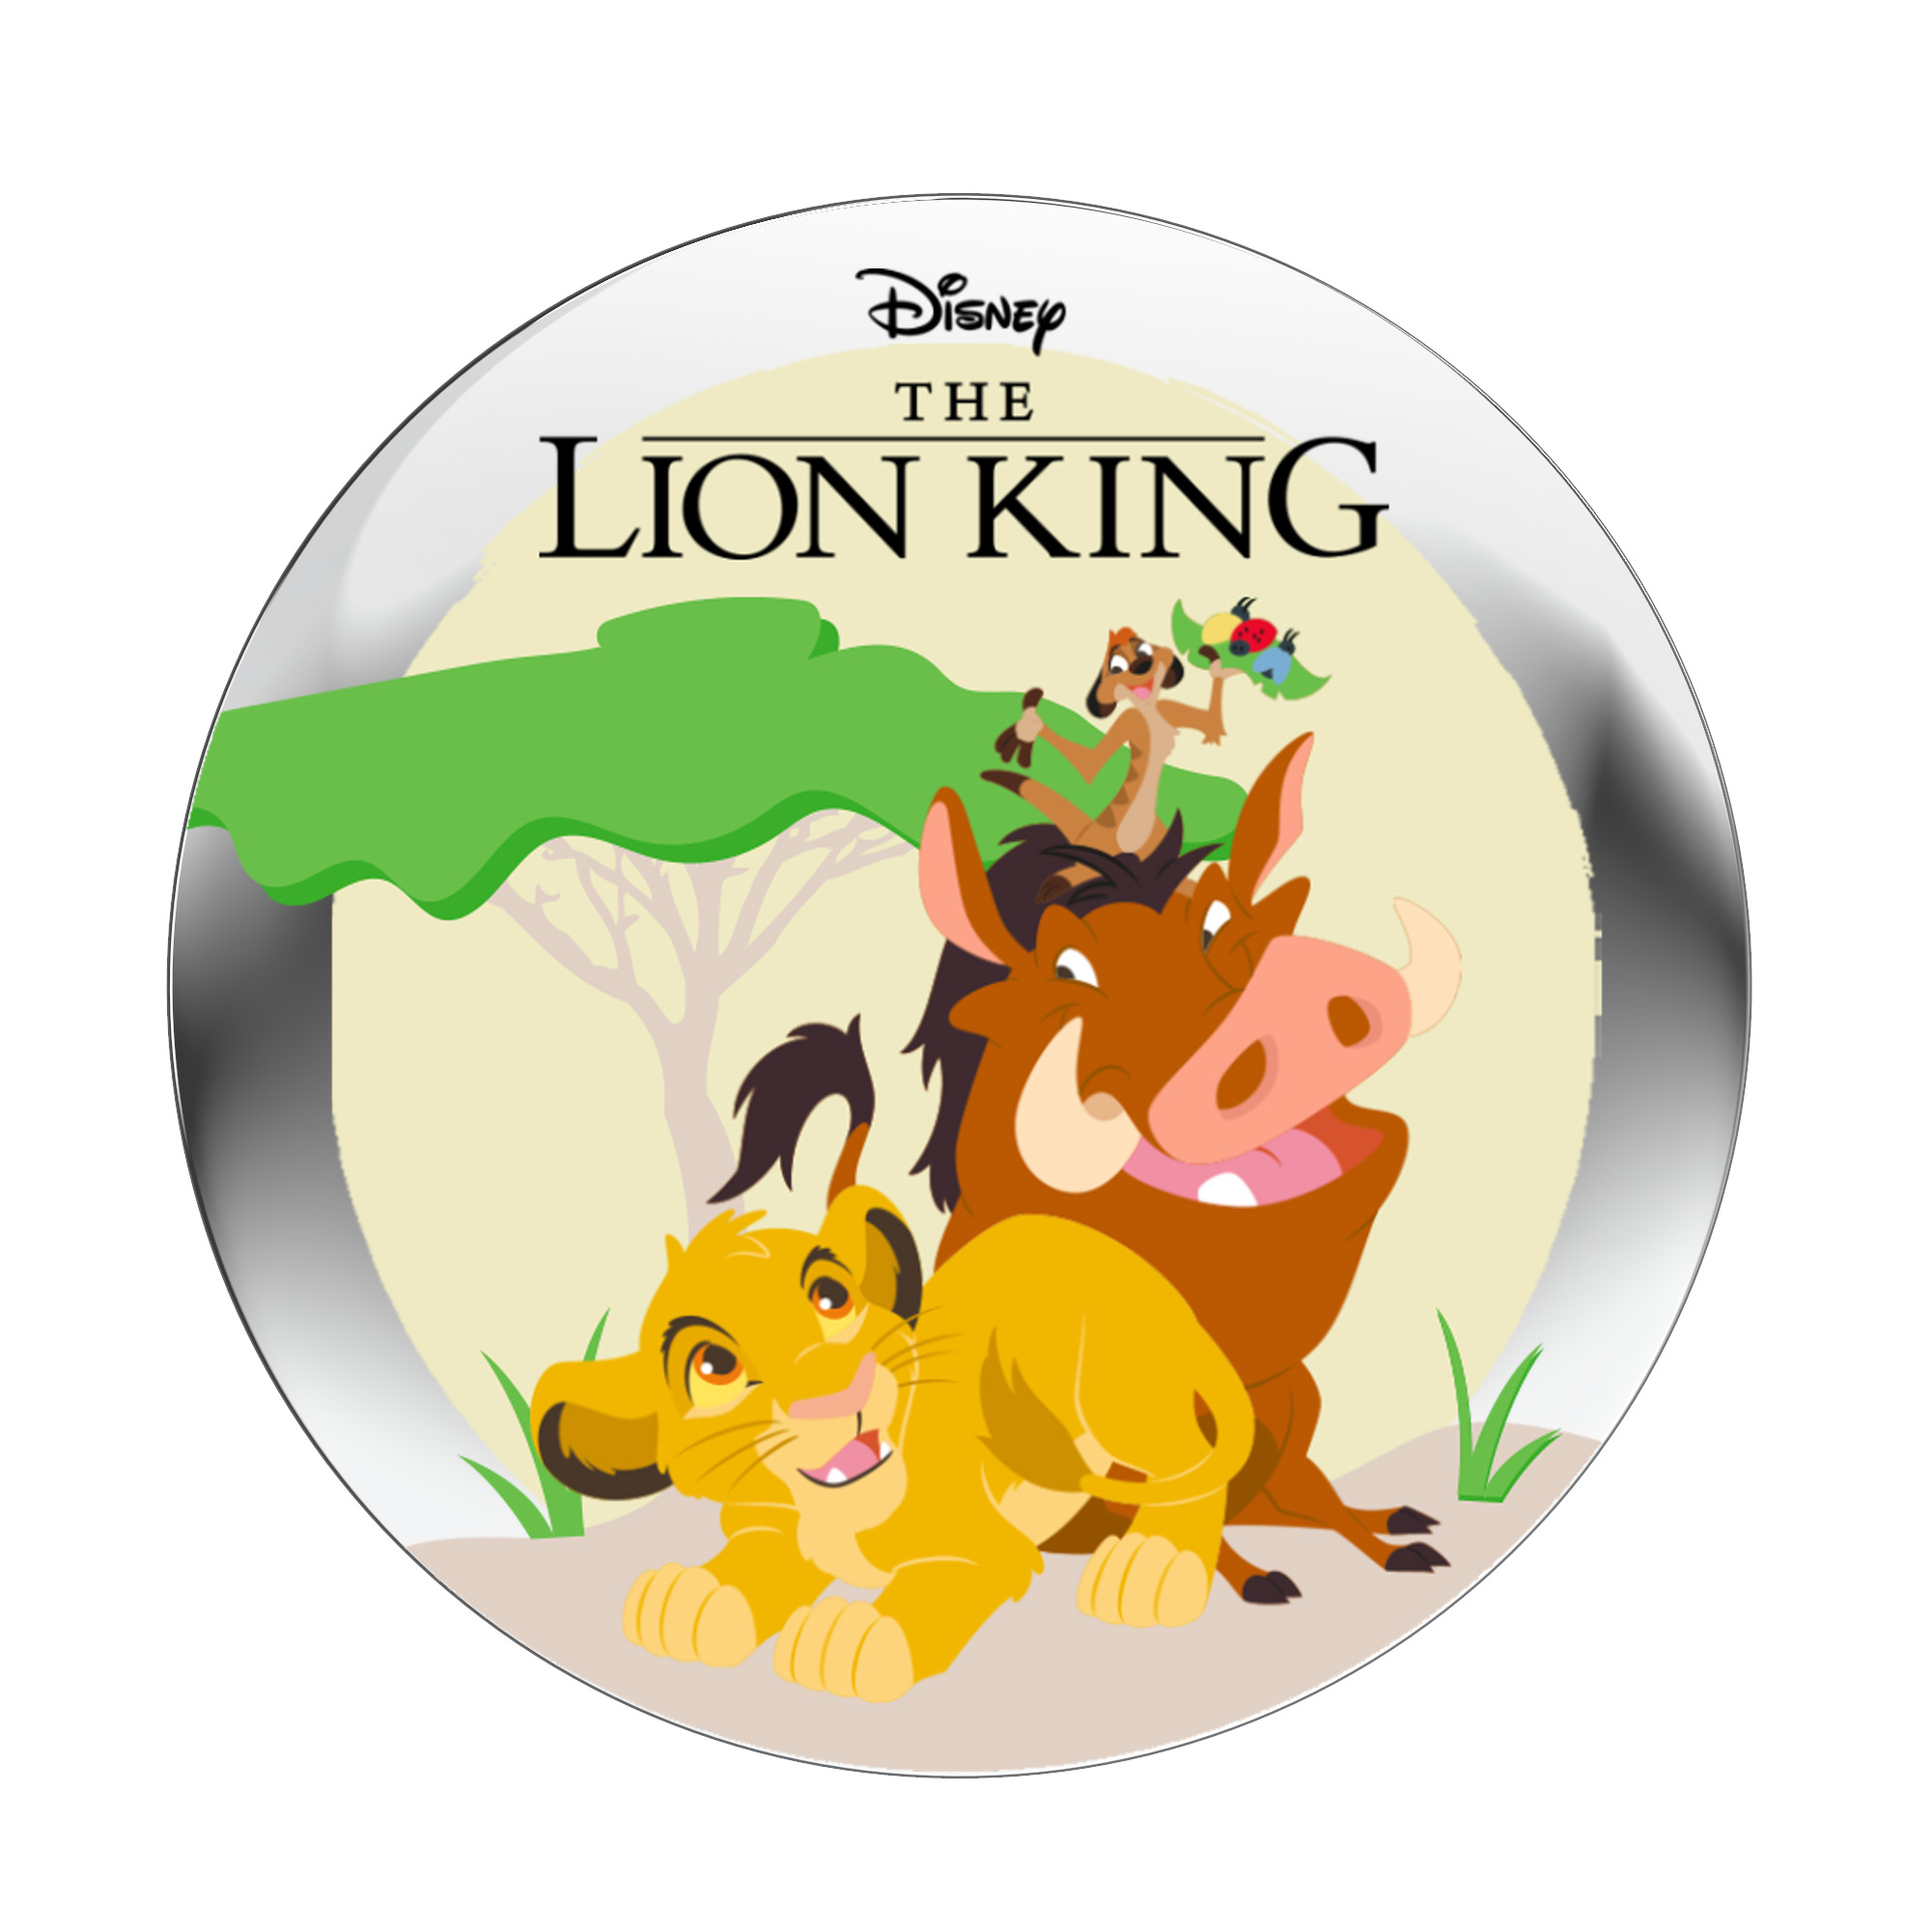  StoryShield StoryPhones Disney der \'König (Download - - Löwen\' Track) Audio - Audiogeschichte für